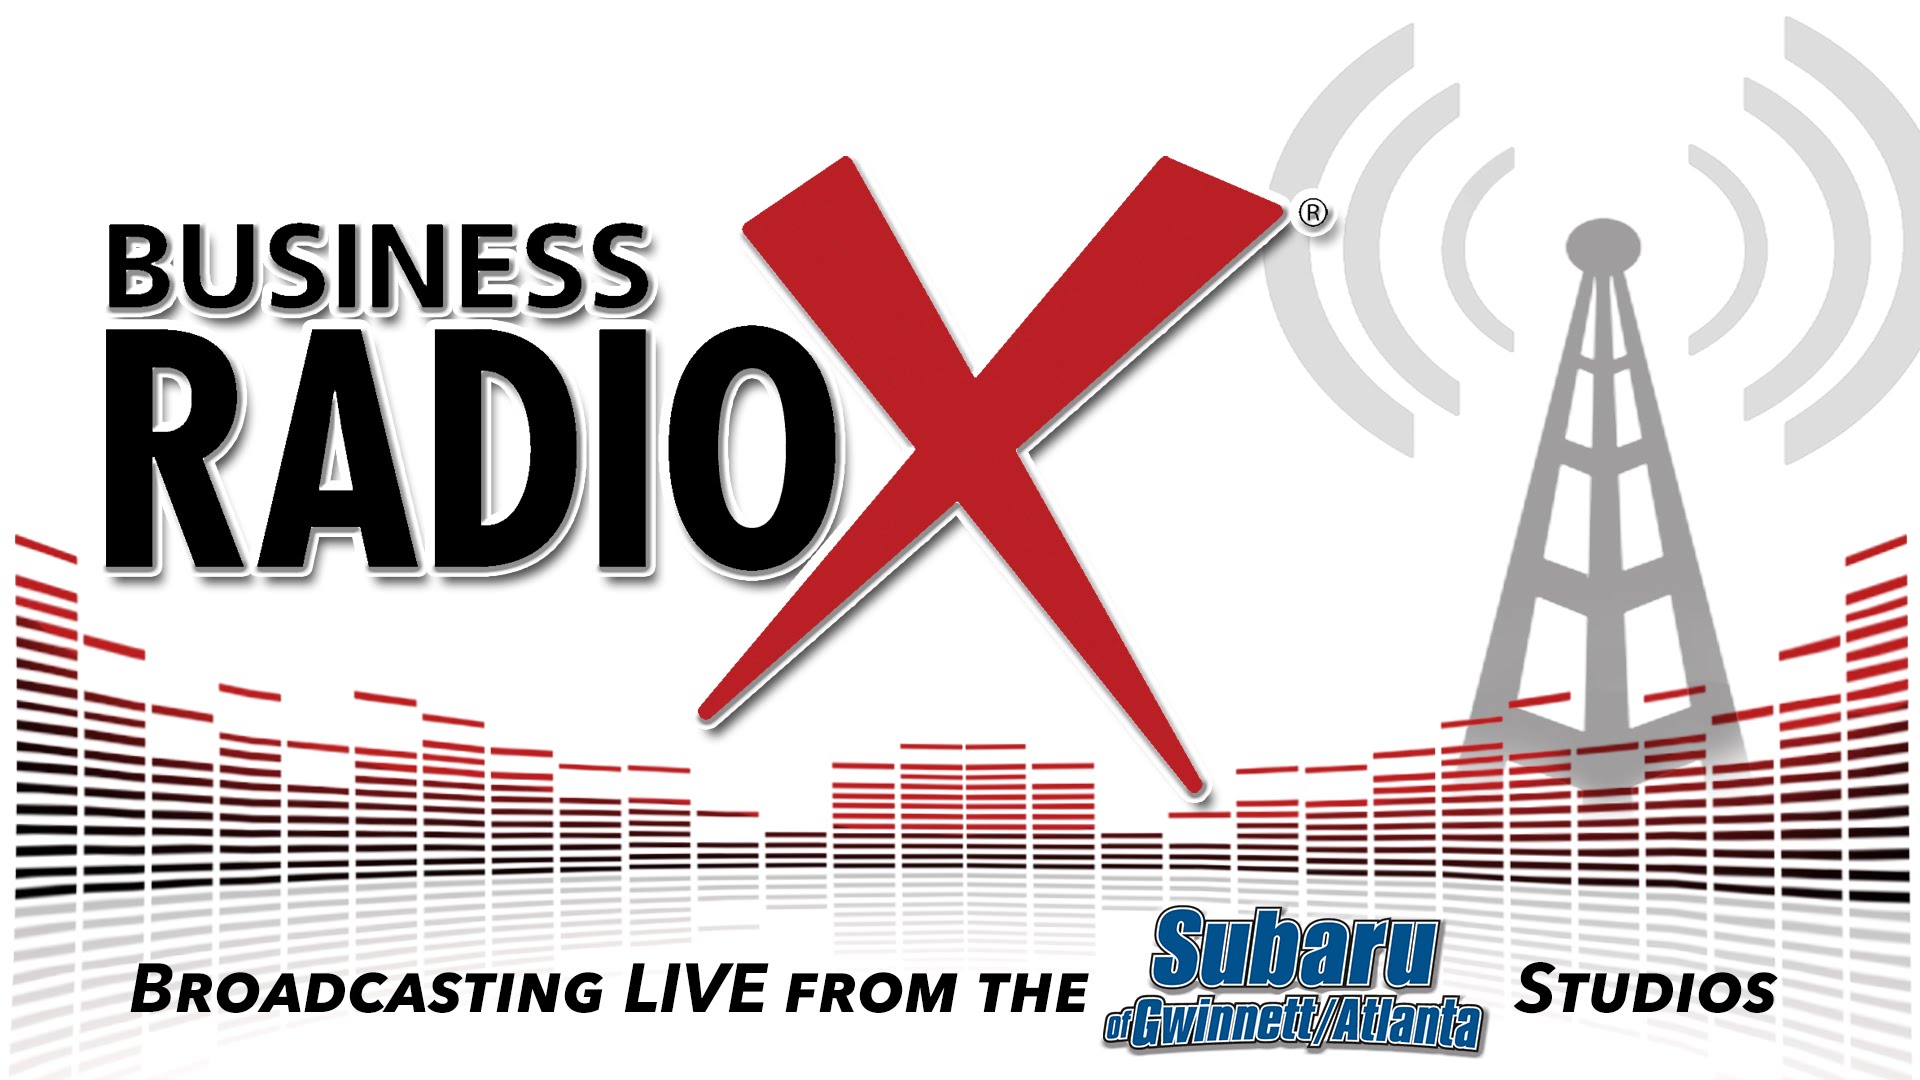 Radio x. Радио бизнес. Live Broadcast. Business Broadcast. Бизнес радио сайт